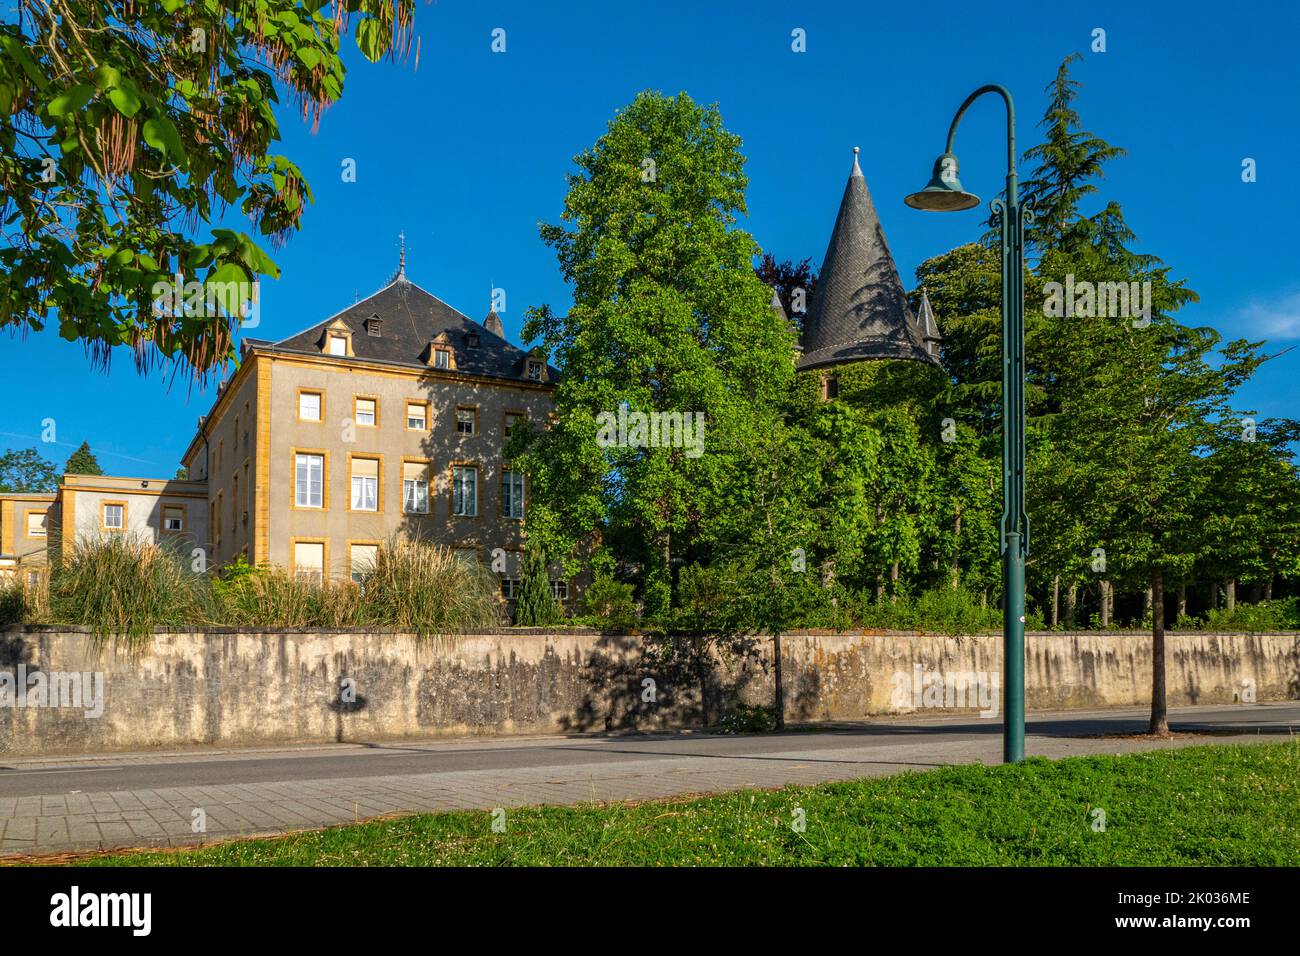 Château de Schengen, Schengen, Benelux, pays du Benelux, canton de Remich, Luxembourg Banque D'Images